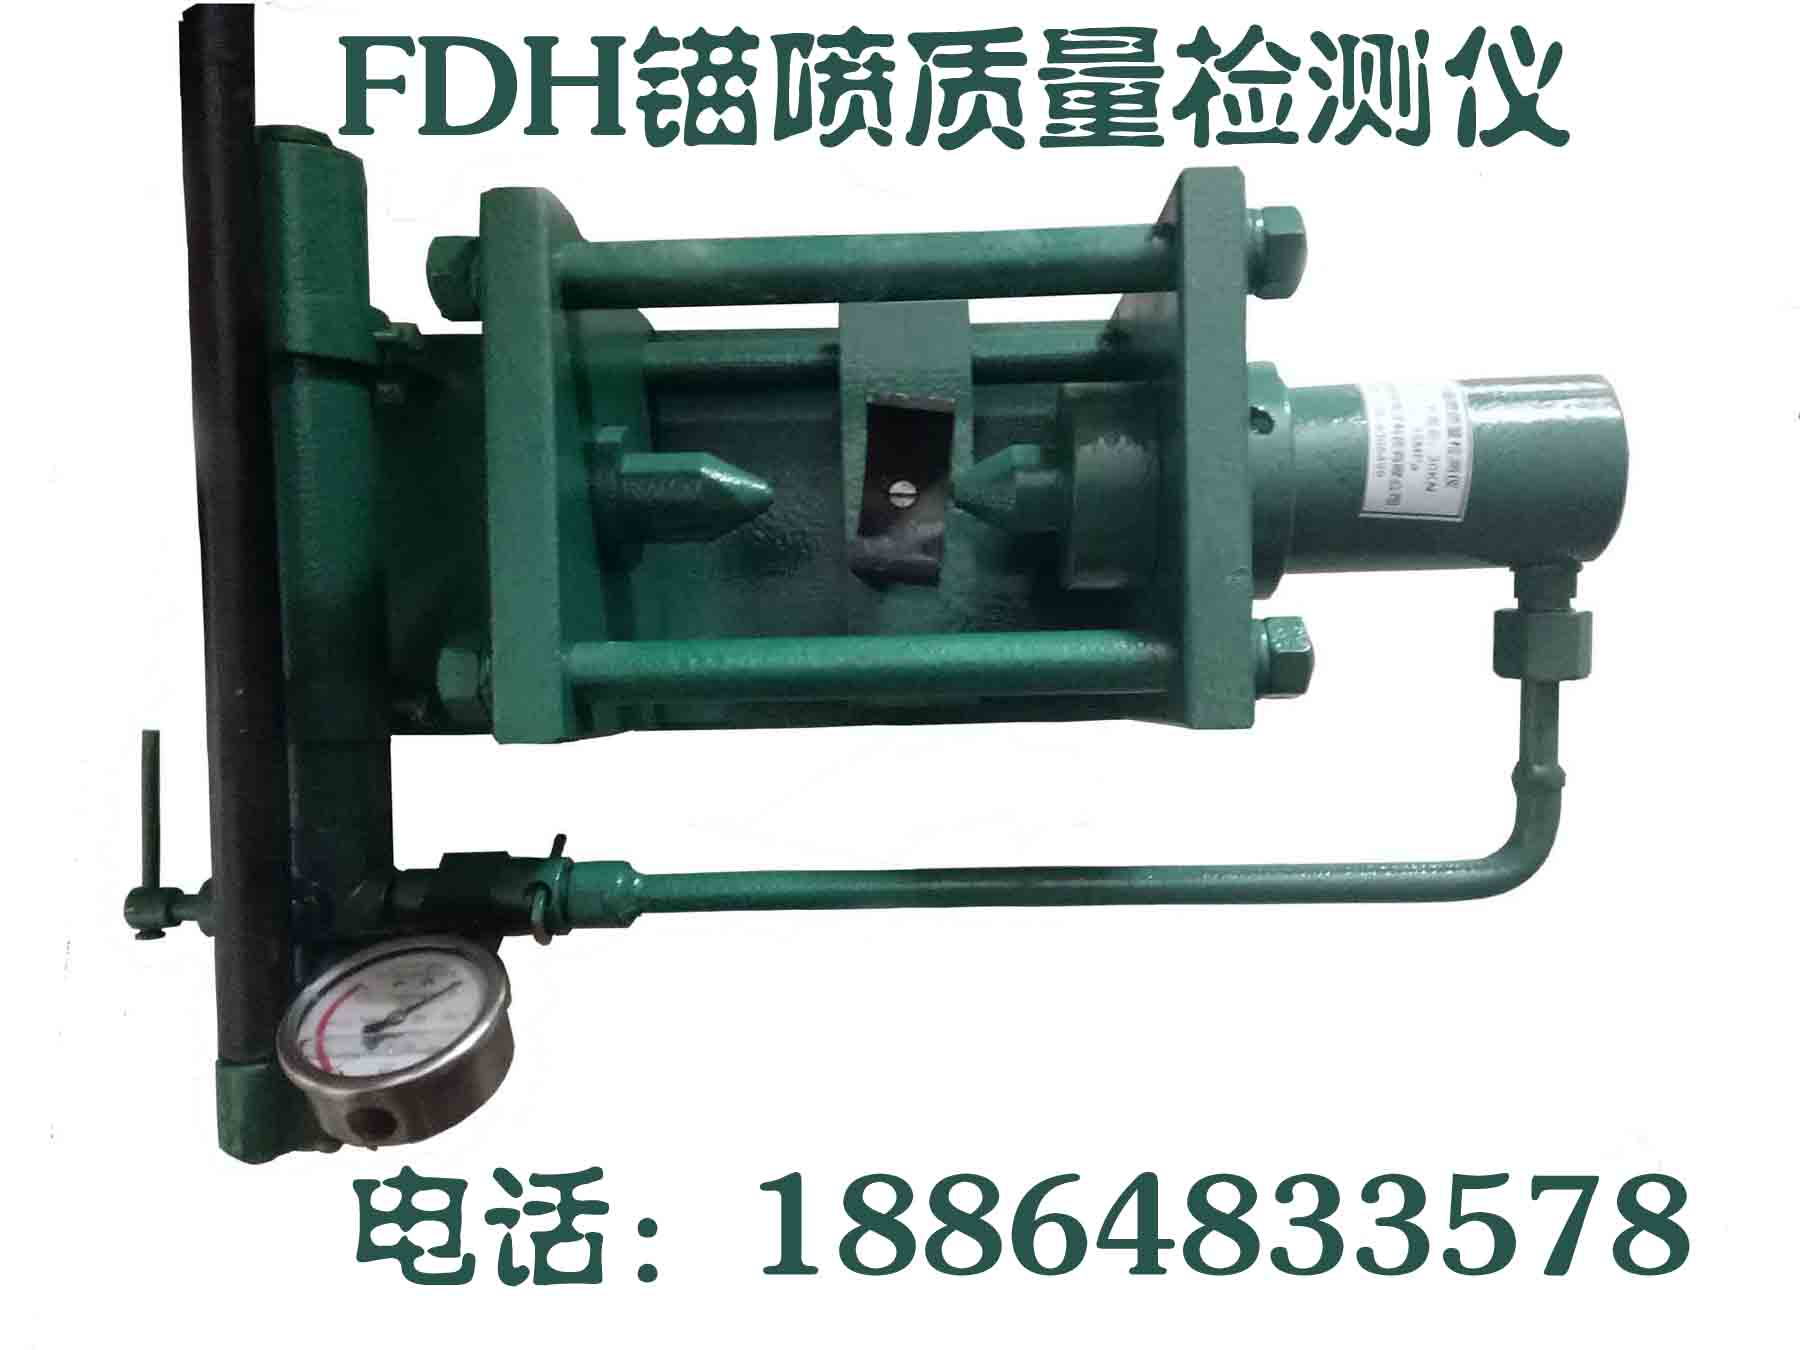 FDH矿用锚喷质量检测仪|喷射混凝土强度检测